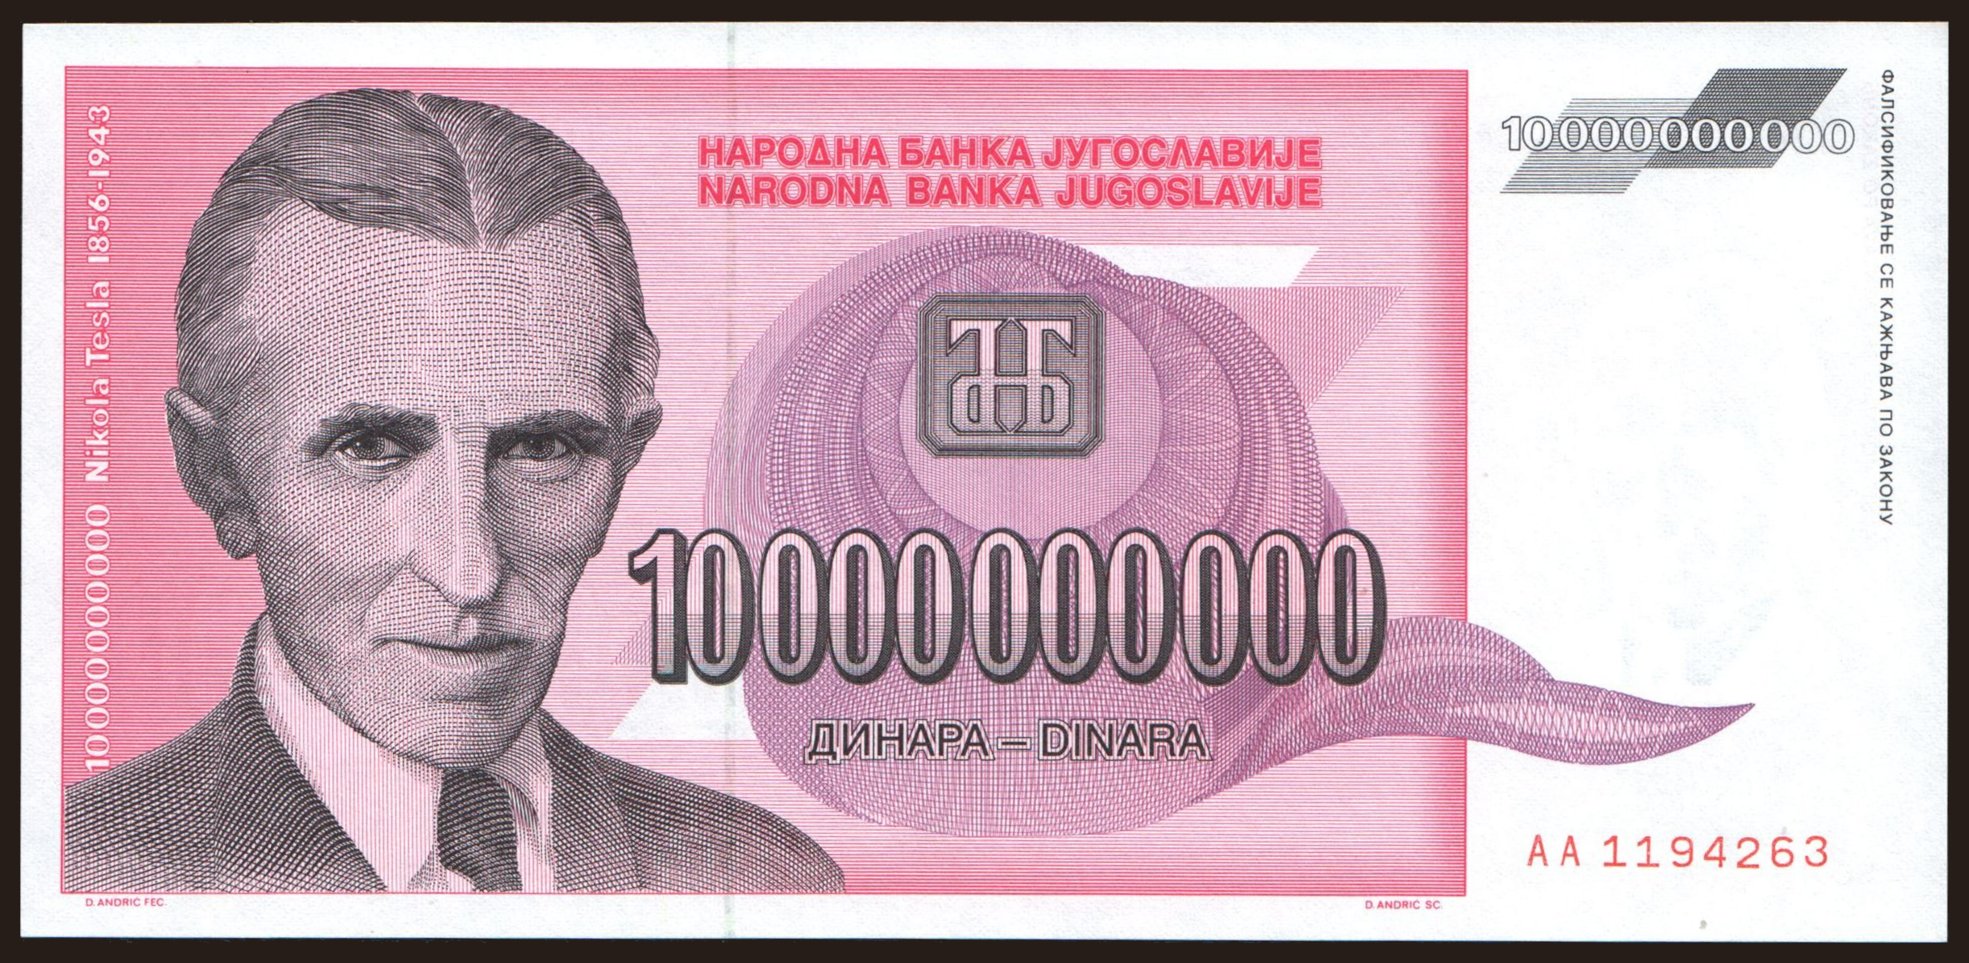 10.000.000.000 dinara, 1993